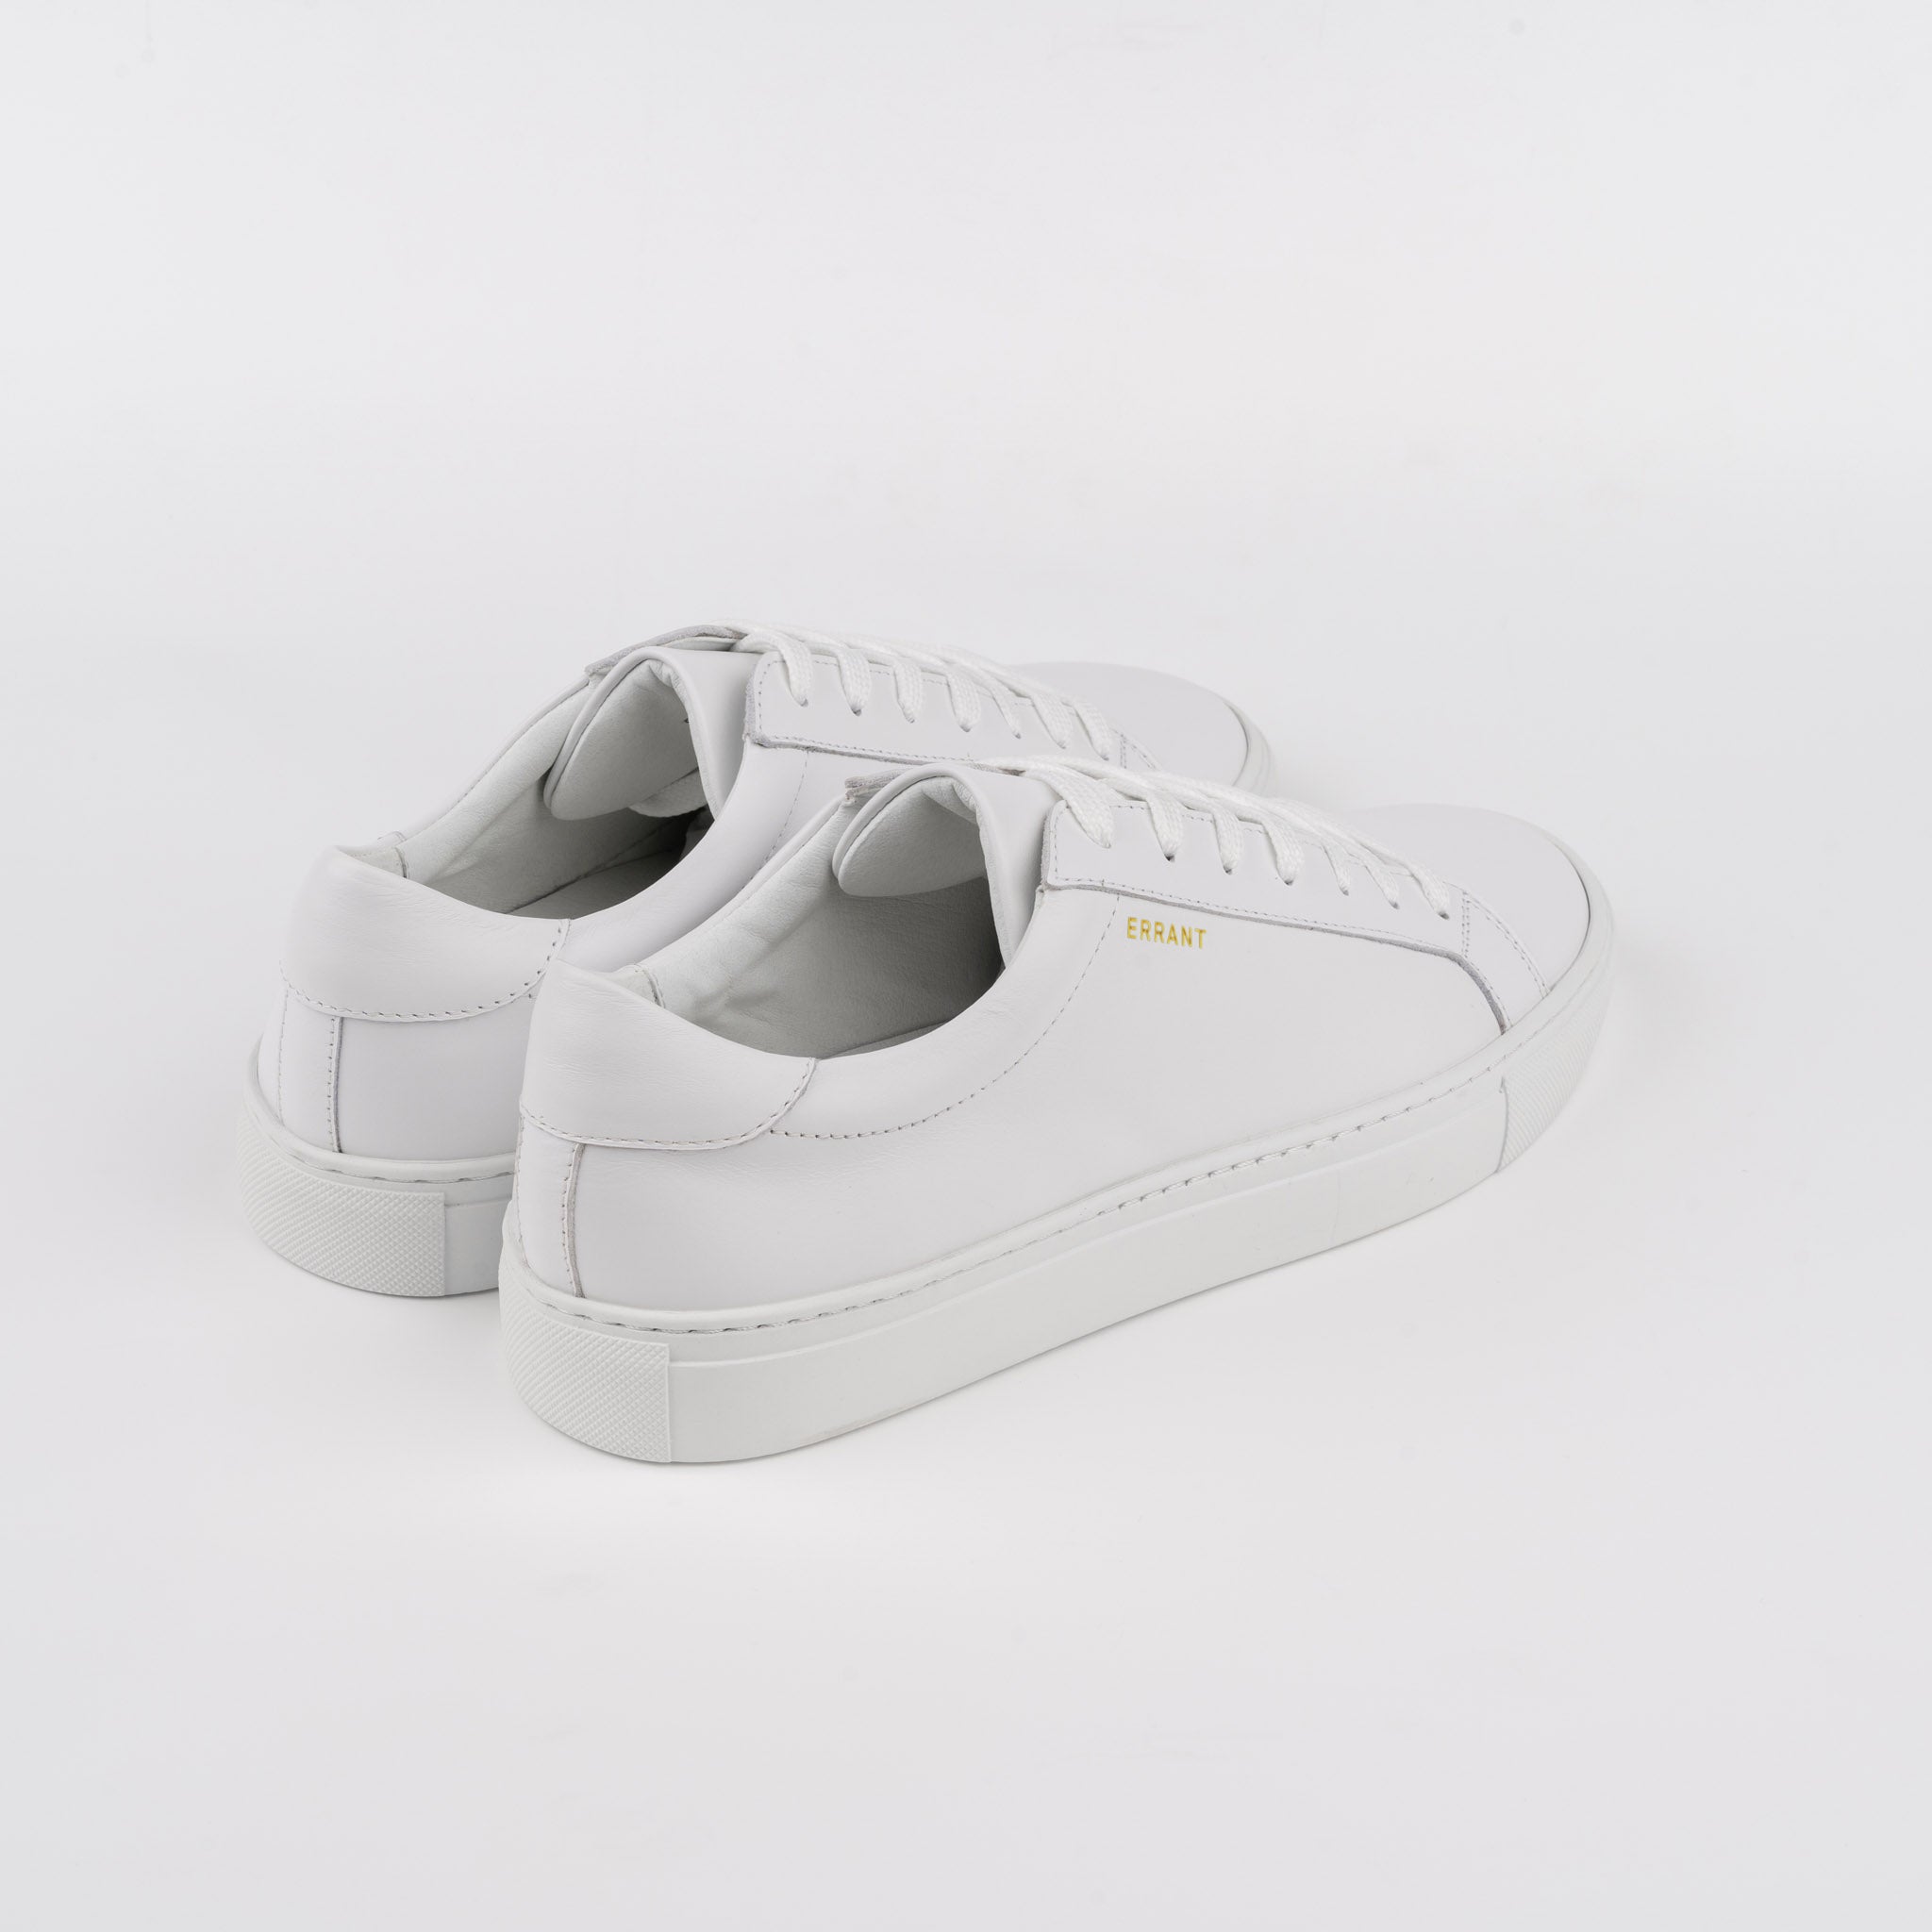 Essential Sneaker - White Gold (Herre): Hvide sneakers med gyldne detaljer, håndlavet i Portugal. Høj kvalitet, komfortabel skum sål, perfekt til både hverdagsbrug og fest.